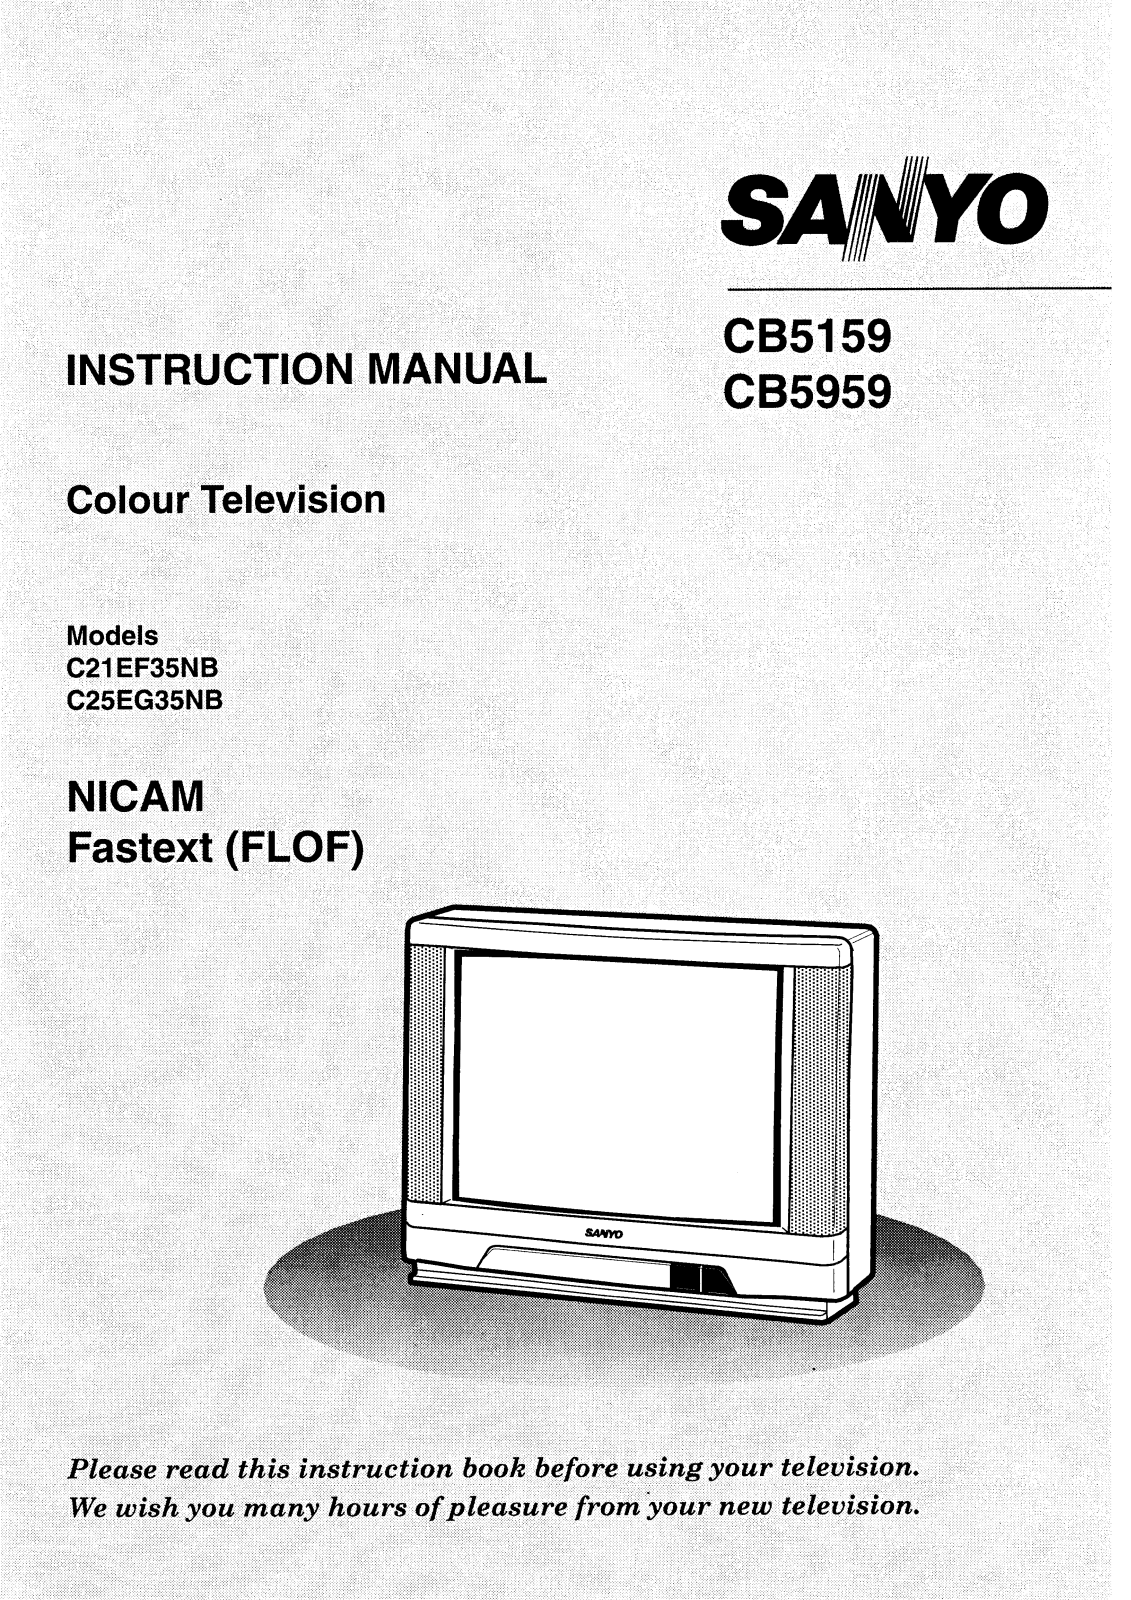 Sanyo CB5159, CB5959 Instruction Manual